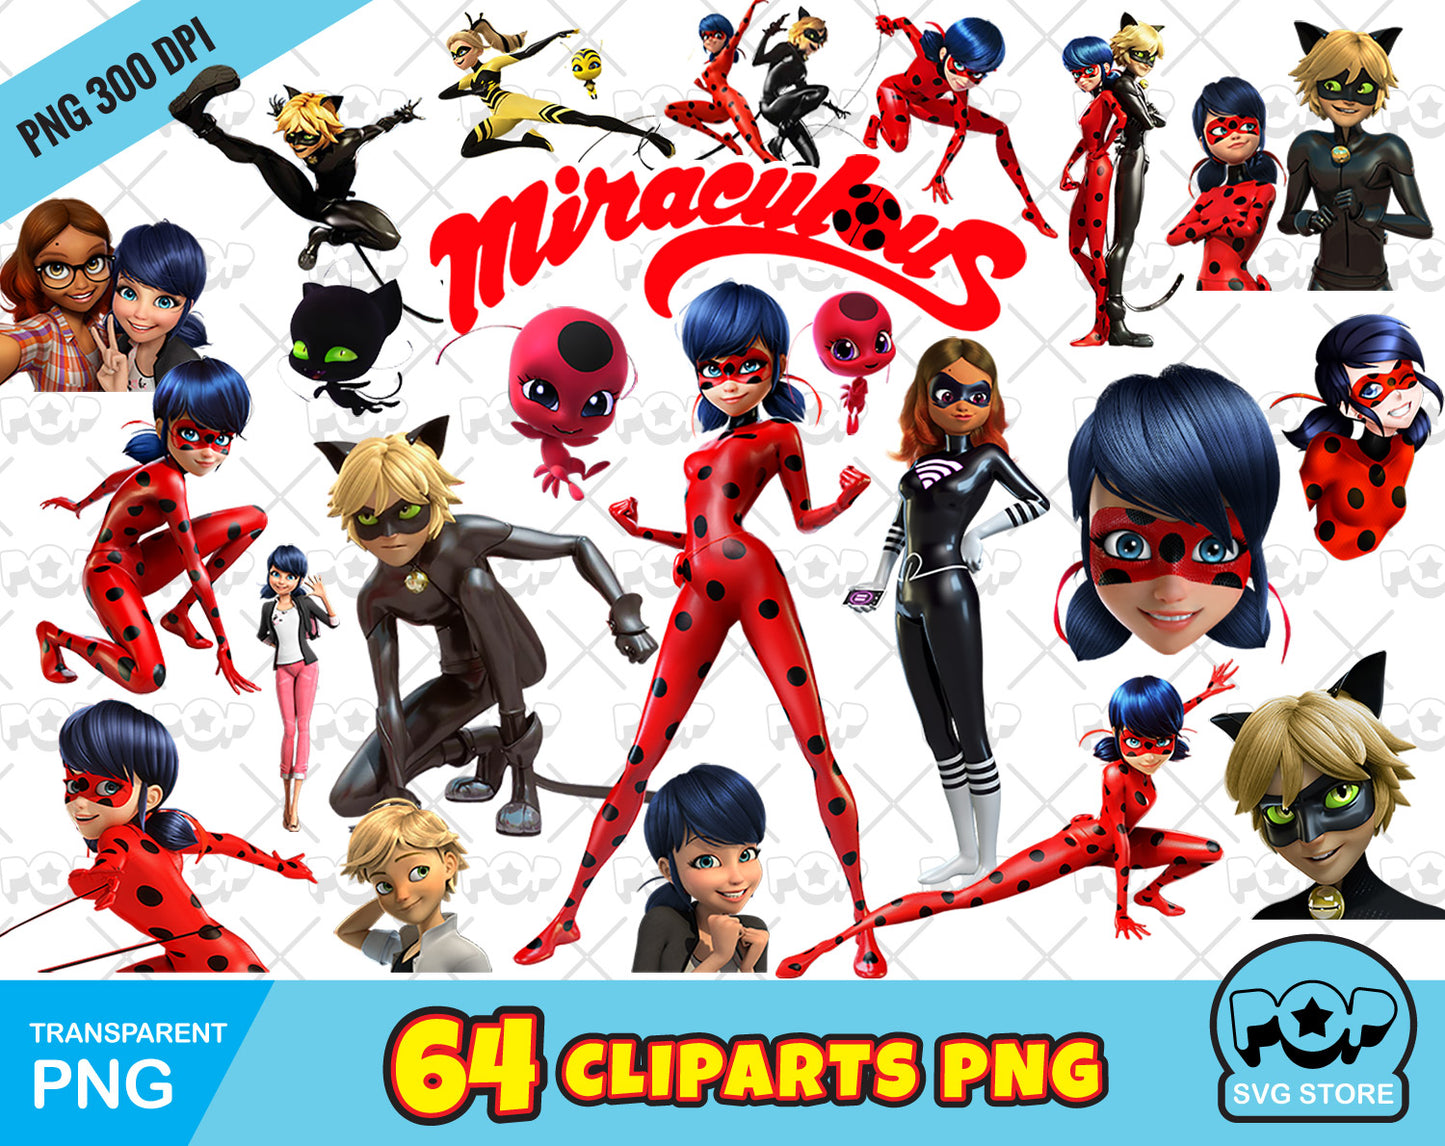 Miraculous Ladybug clipart bundle, transparent PNG, designs for decoration / sublimation, instant download